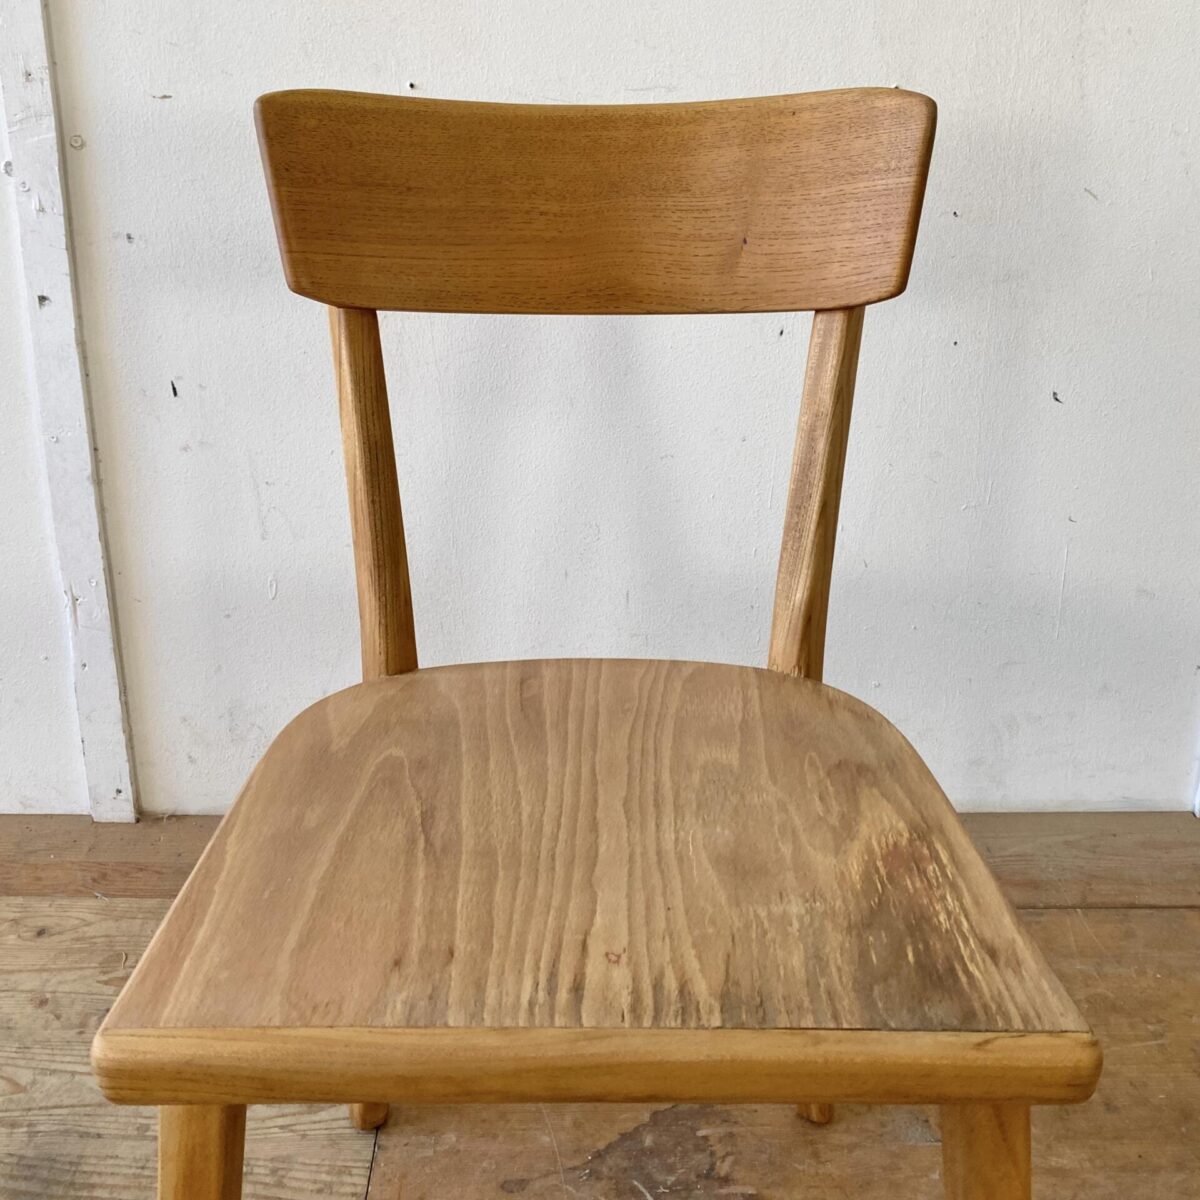 Deuxieme.shop Horgen Glarus Stühle. Verschiedene Beizenstühle, geölt. Preis pro Stuhl zwischen 350-480.- Die Stühle sind in stabilem restaurierten Zustand, die Holzoberflächen sind geschliffen und geölt, leichte Alterspatina. Vier davon sind von Horgenglarus, und teilweise mehrere Stück vorhanden. 